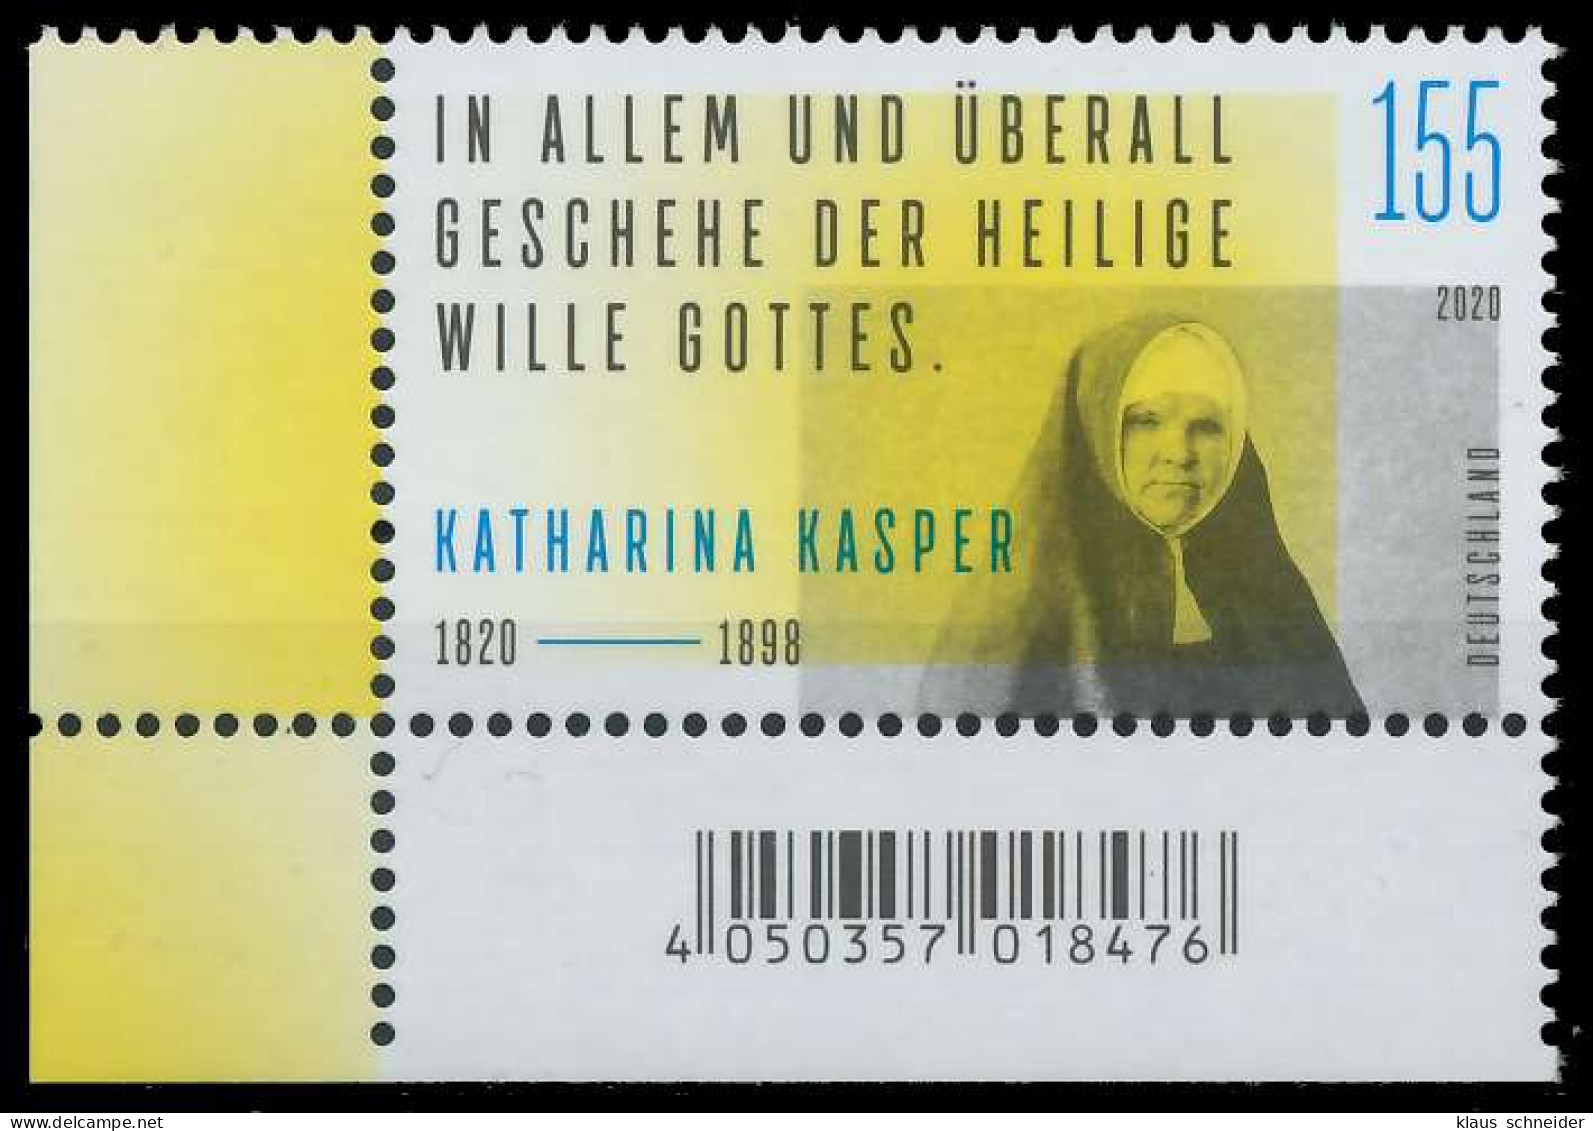 BRD BUND 2020 Nr 3548 Postfrisch ECKE-ULI SED355A - Unused Stamps